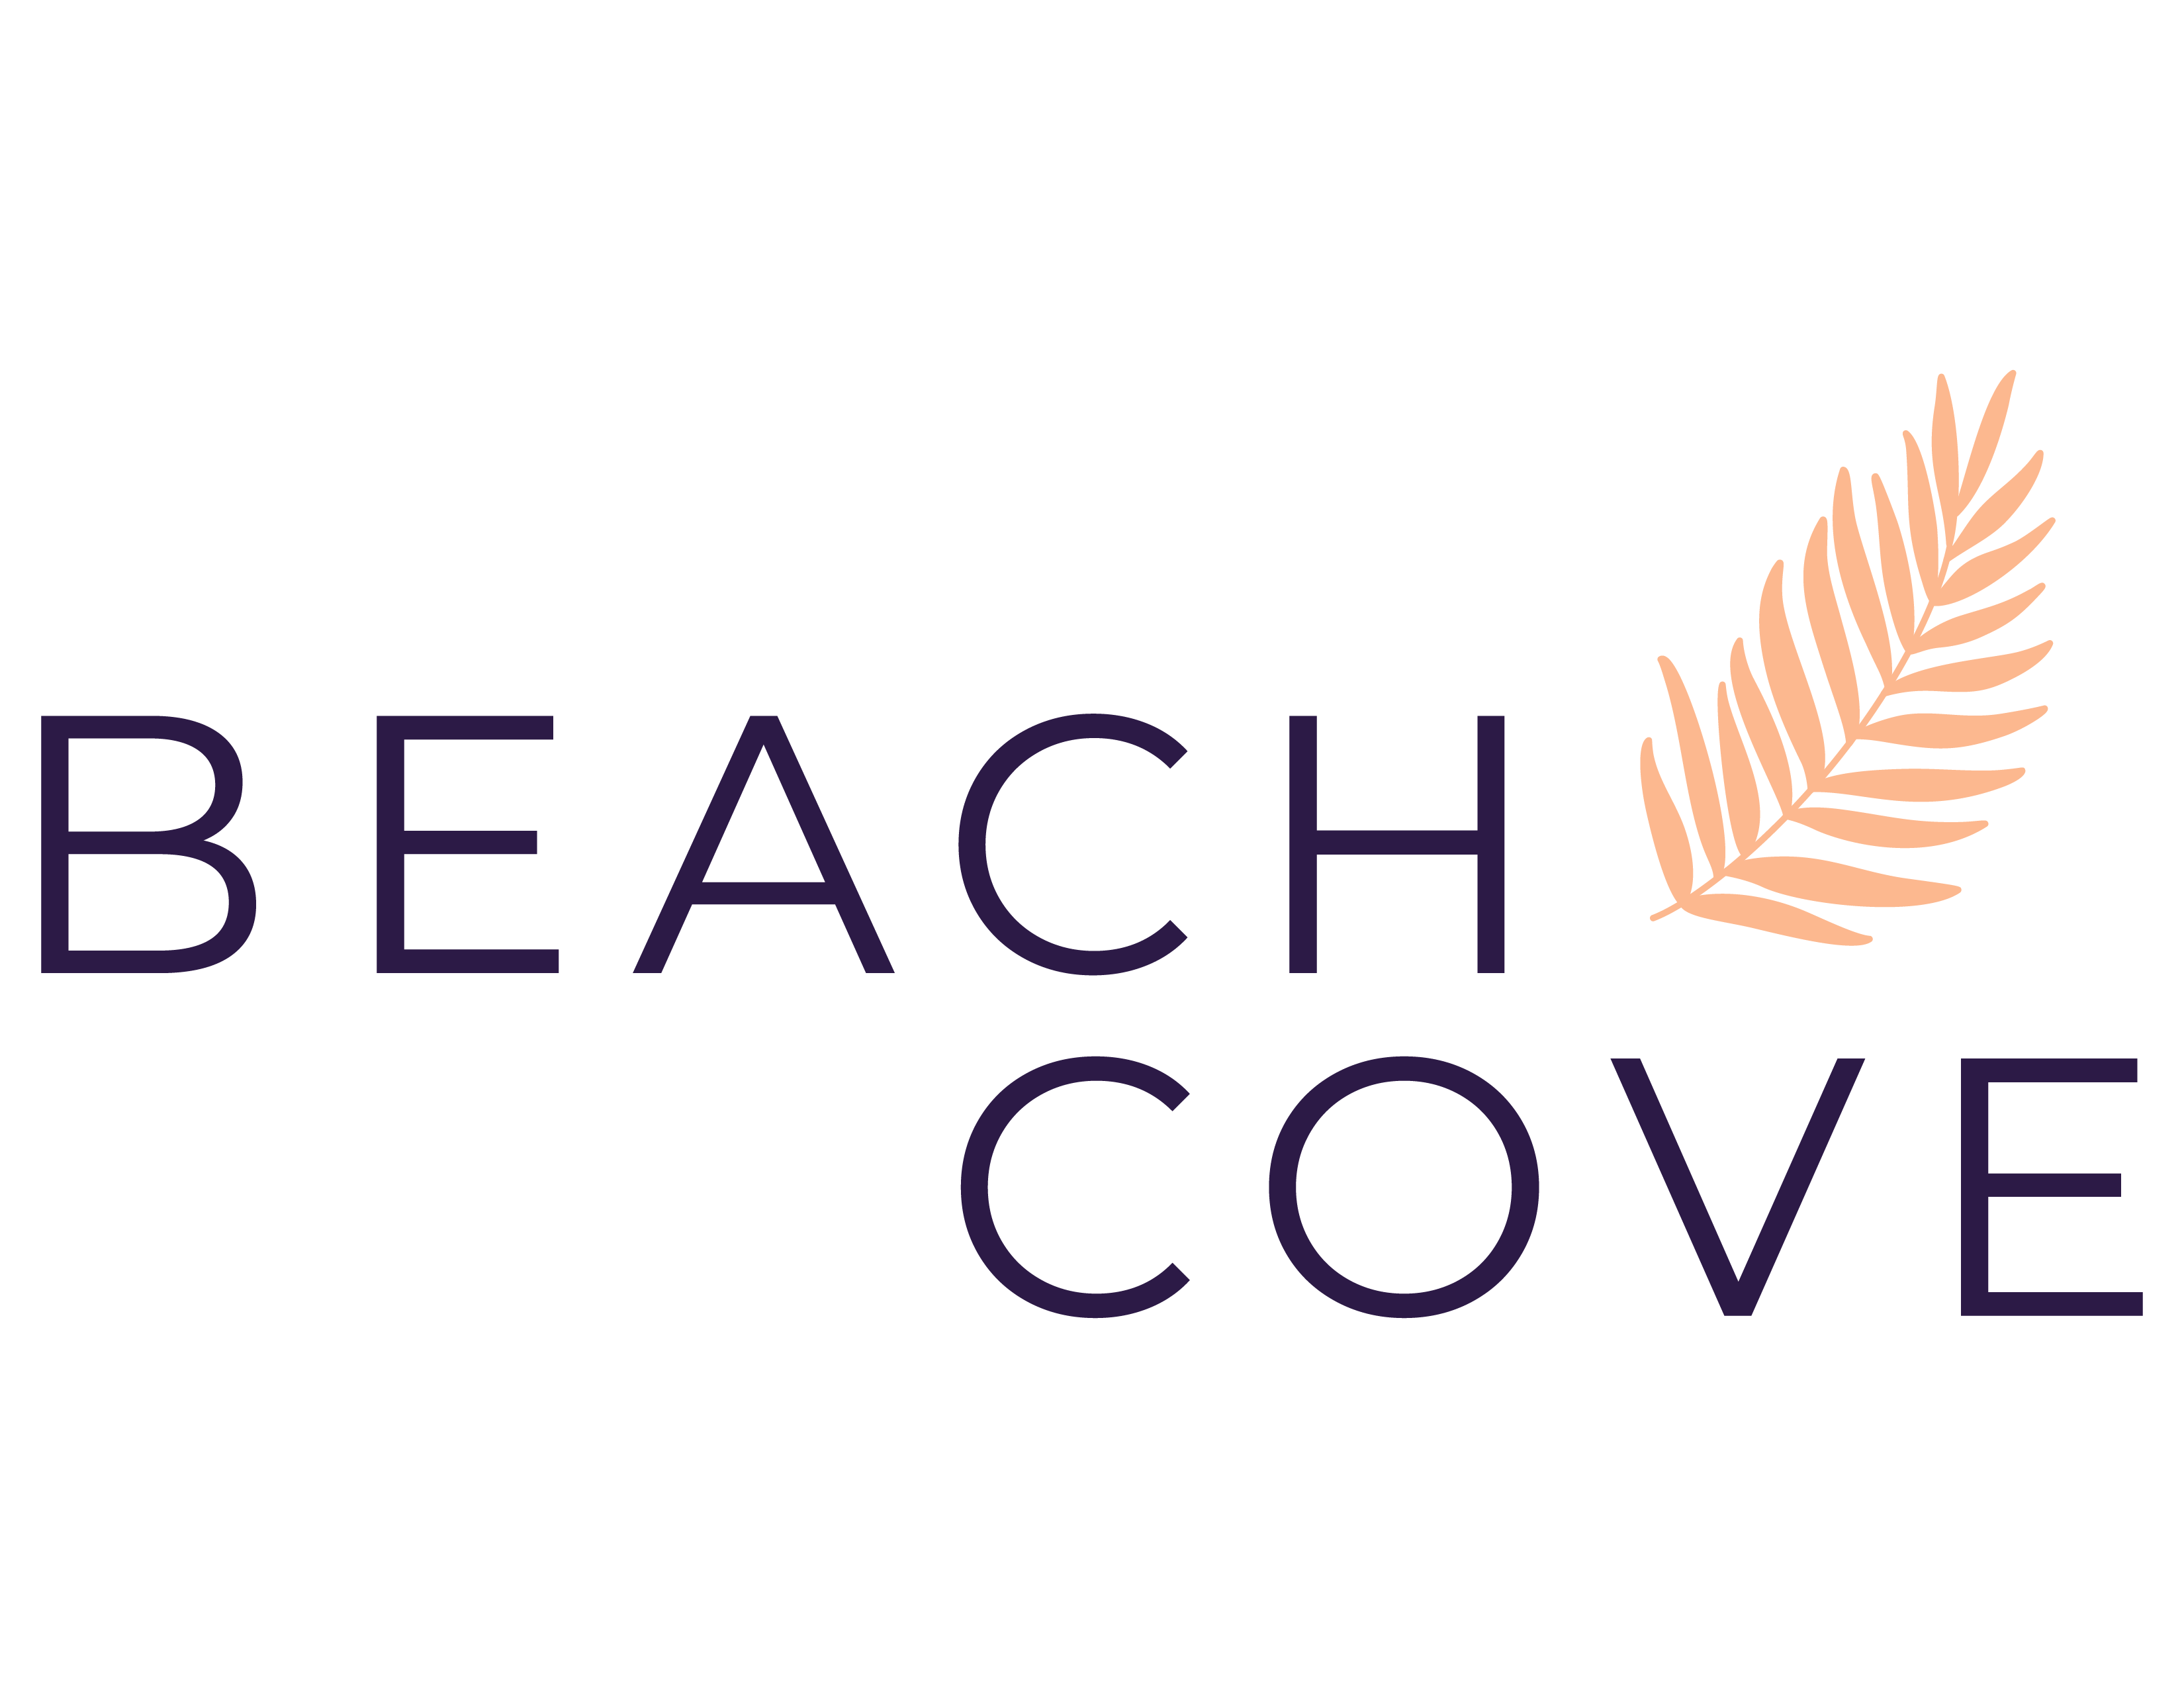 Beach Cove logo